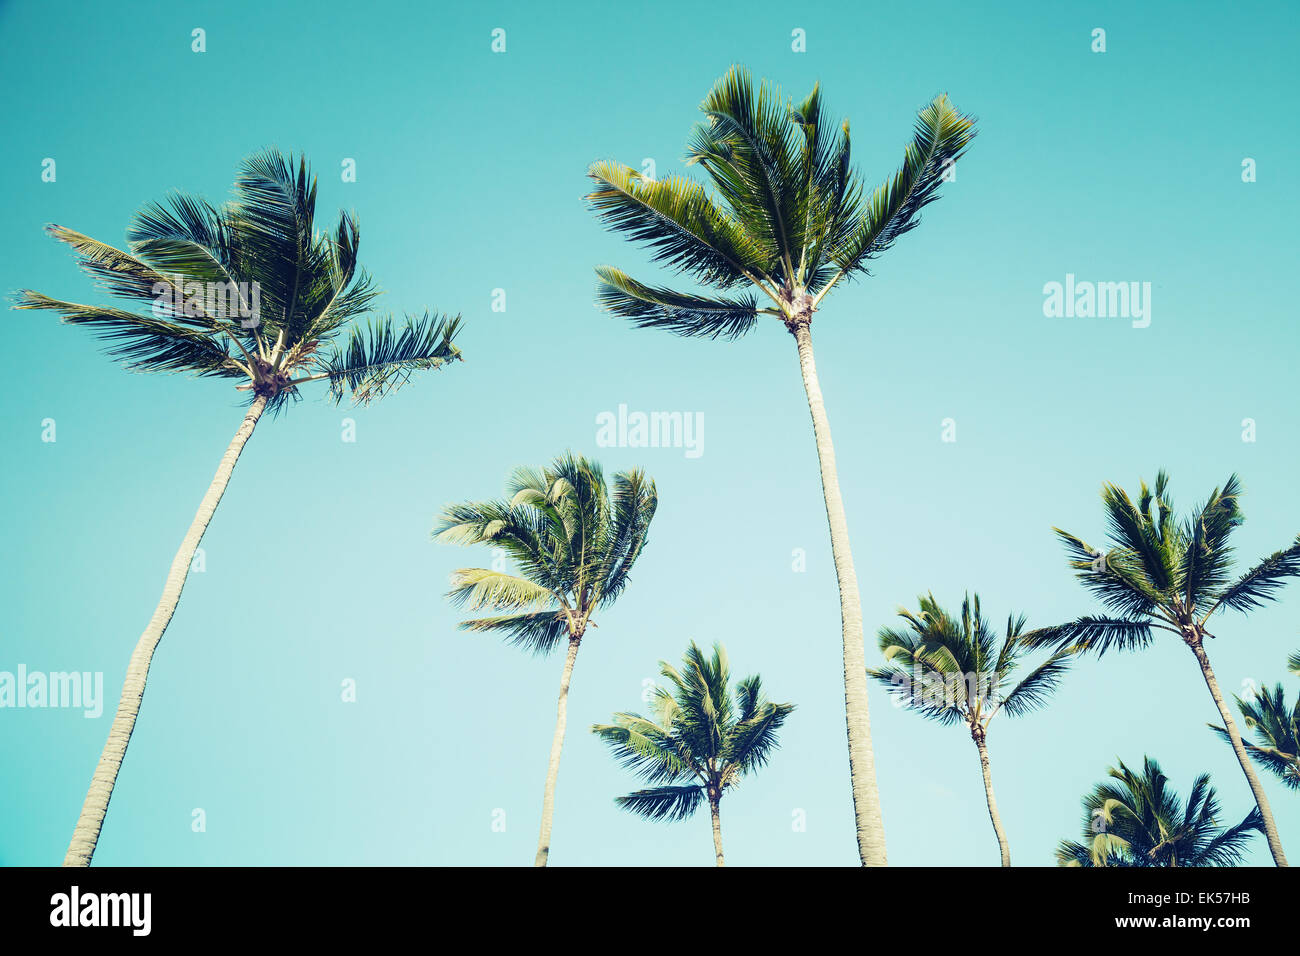 Palmiers sur fond de ciel clair. Vintage style. Photo avec old style tons vert effet filtre instagram Banque D'Images